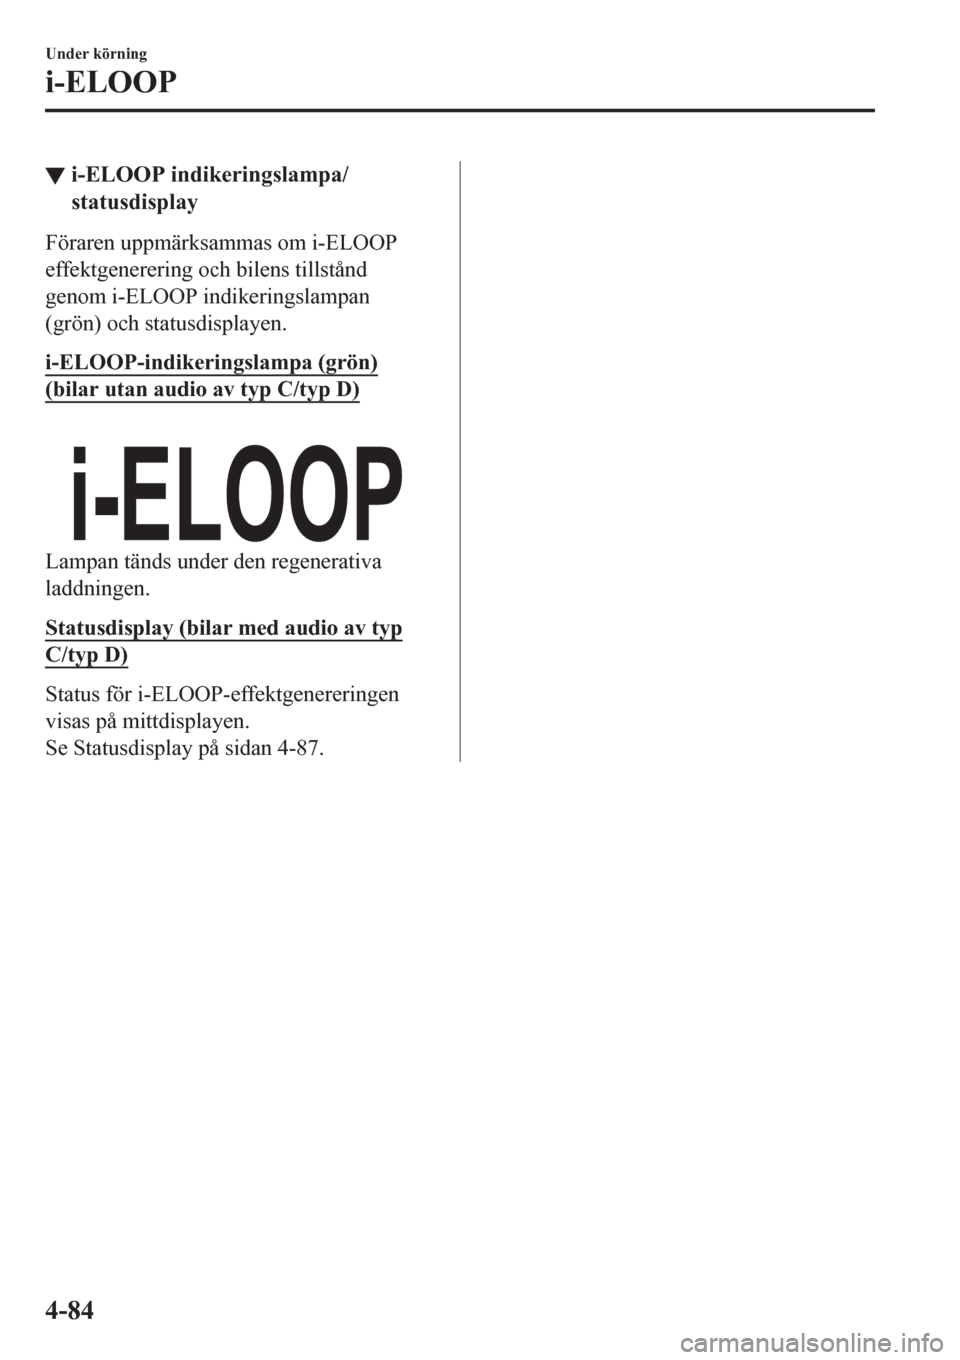 MAZDA MODEL CX-3 2016  Ägarmanual (in Swedish) ▼i-ELOOP indikeringslampa/
statusdisplay
Föraren uppmärksammas om i-ELOOP
effektgenerering och bilens tillstånd
genom i-ELOOP indikeringslampan
(grön) och statusdisplayen.
i-ELOOP-indikeringslam